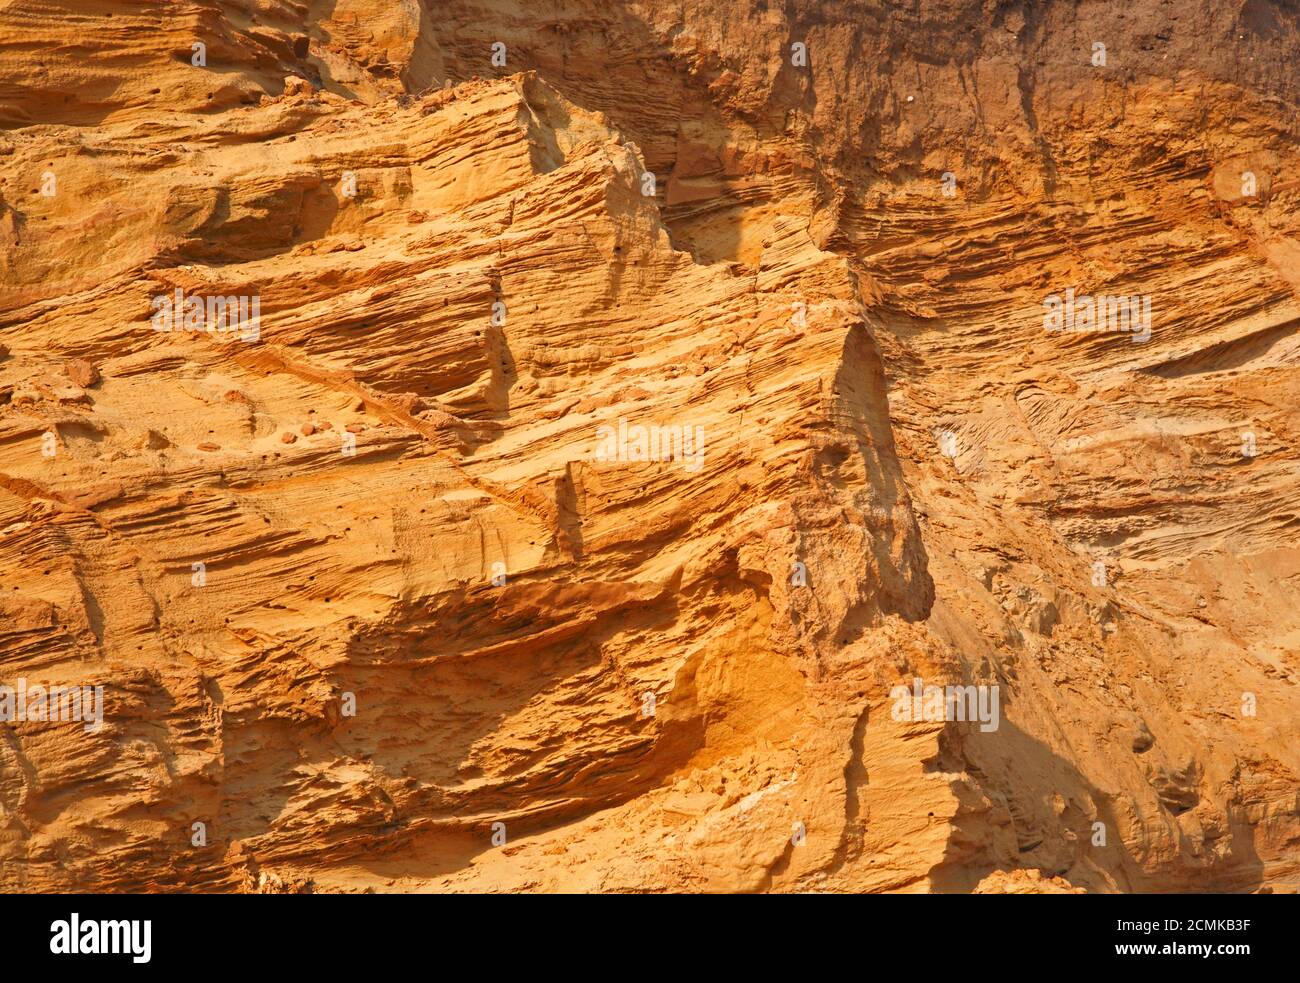 Détail des sables glaciaires stratifiés du Pléistocène moyen dans les falaises de la côte nord du Norfolk à Happisburgh, Norfolk, Angleterre, Royaume-Uni. Banque D'Images